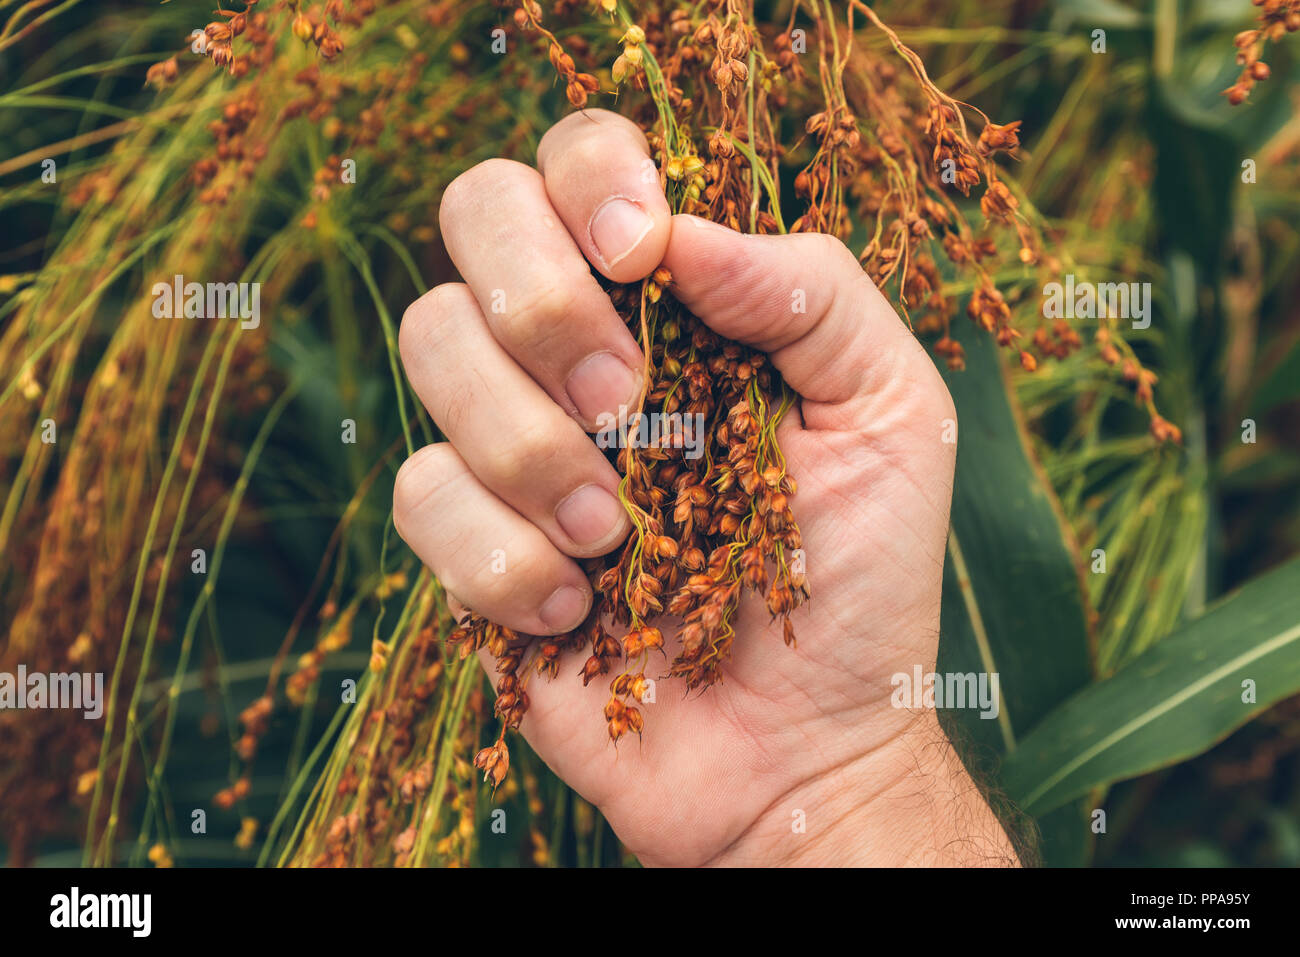 Farmer examining ripe proso millet (Panicum miliaceum), close up of hand Stock Photo